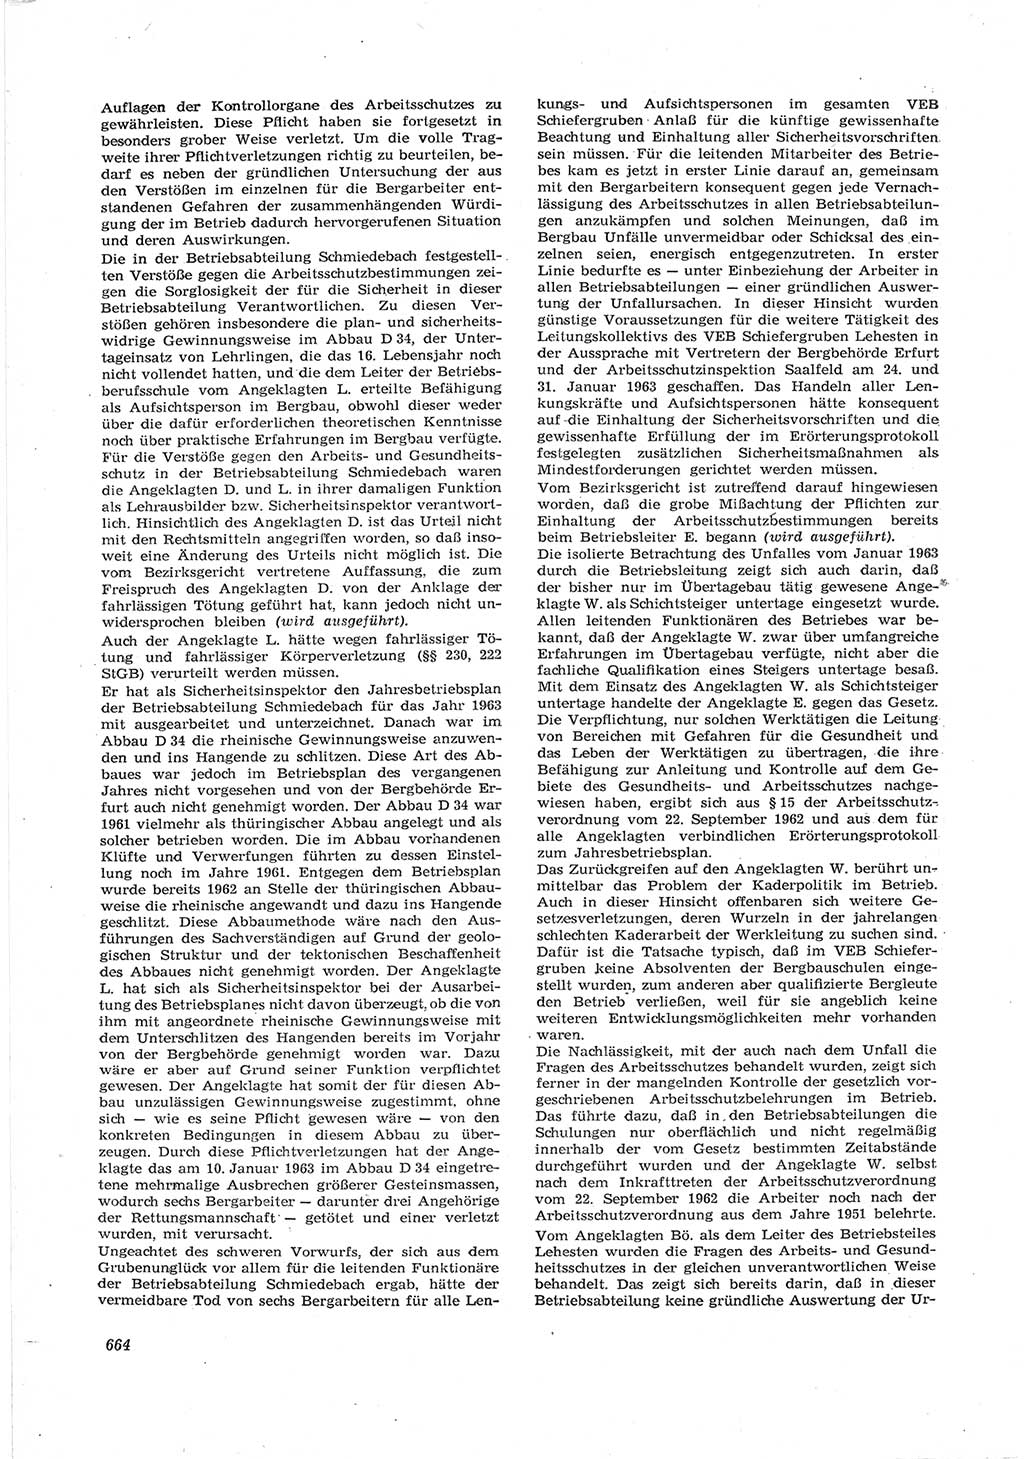 Neue Justiz (NJ), Zeitschrift für Recht und Rechtswissenschaft [Deutsche Demokratische Republik (DDR)], 17. Jahrgang 1963, Seite 664 (NJ DDR 1963, S. 664)